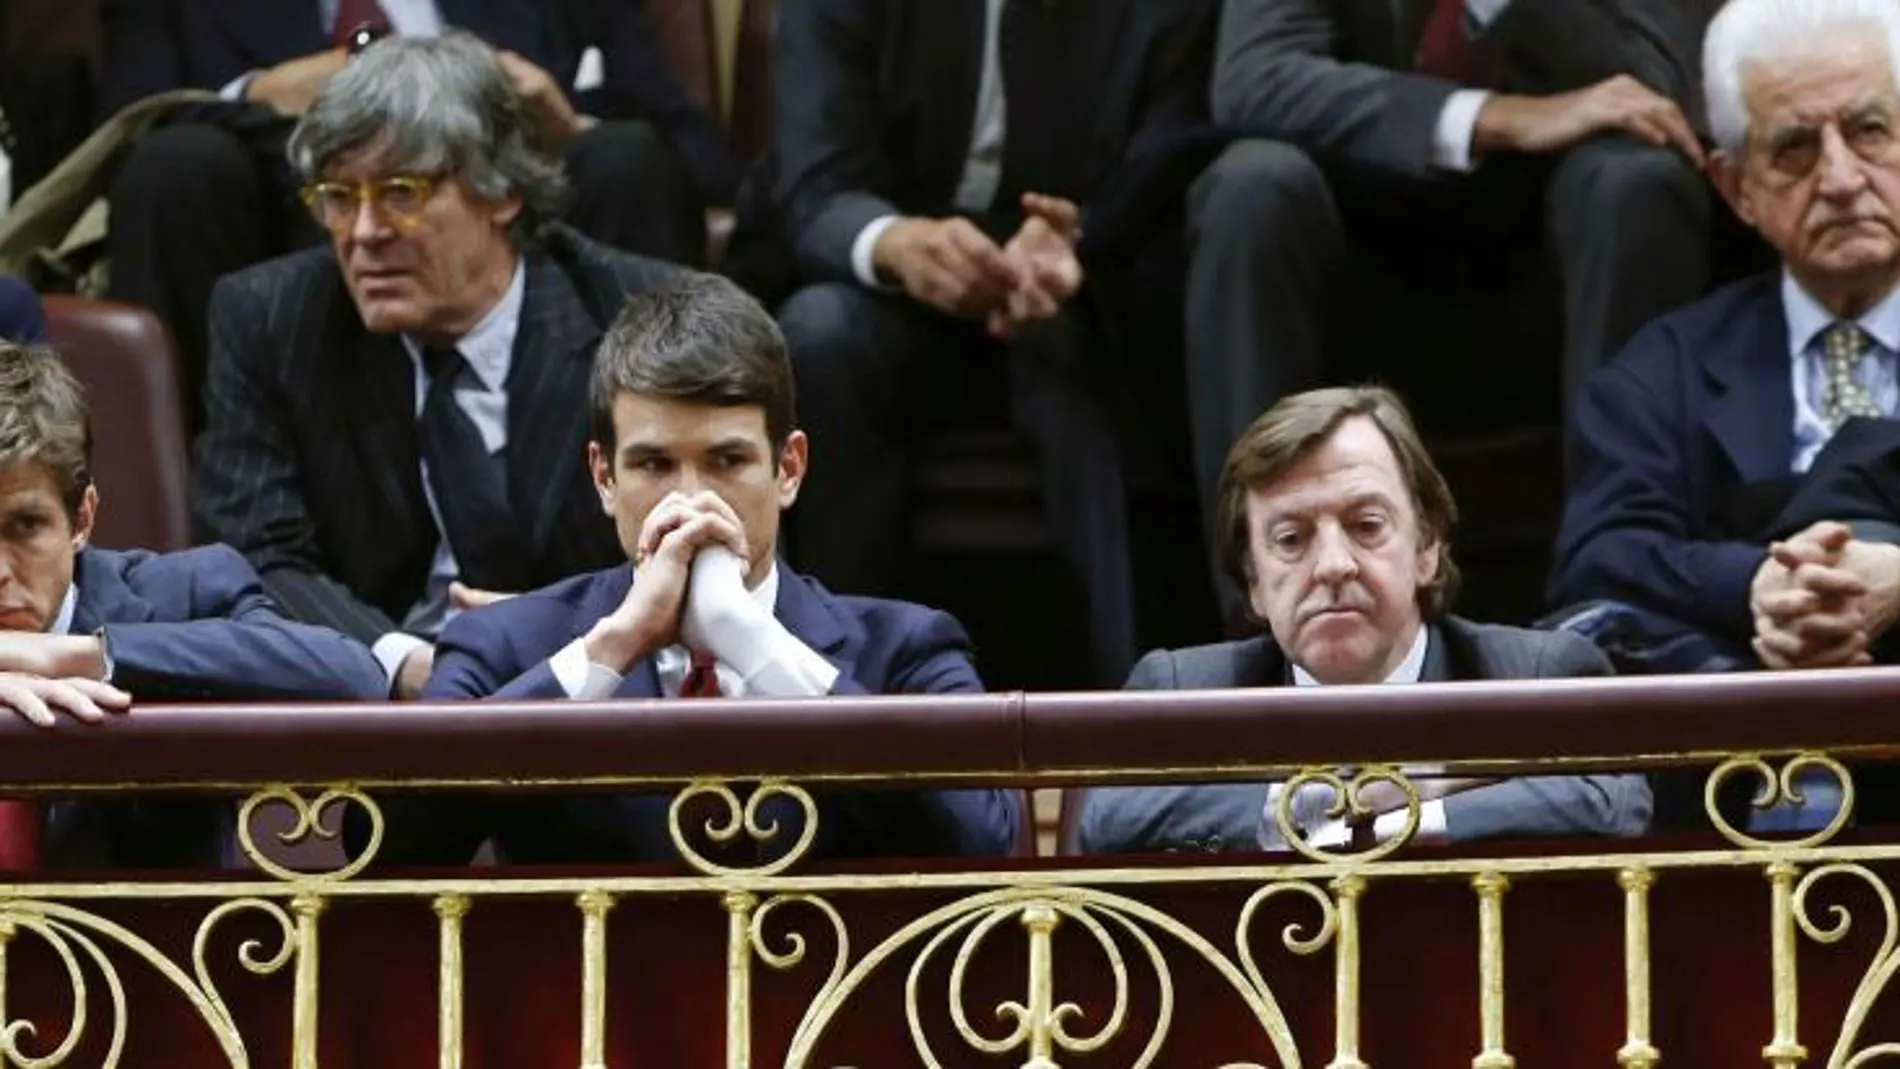 Los diestros Julián López "El Juli"y José María Manzanares, Curro Vázquez, y Santiago Martín "El Viti"asisten al pleno del Congreso